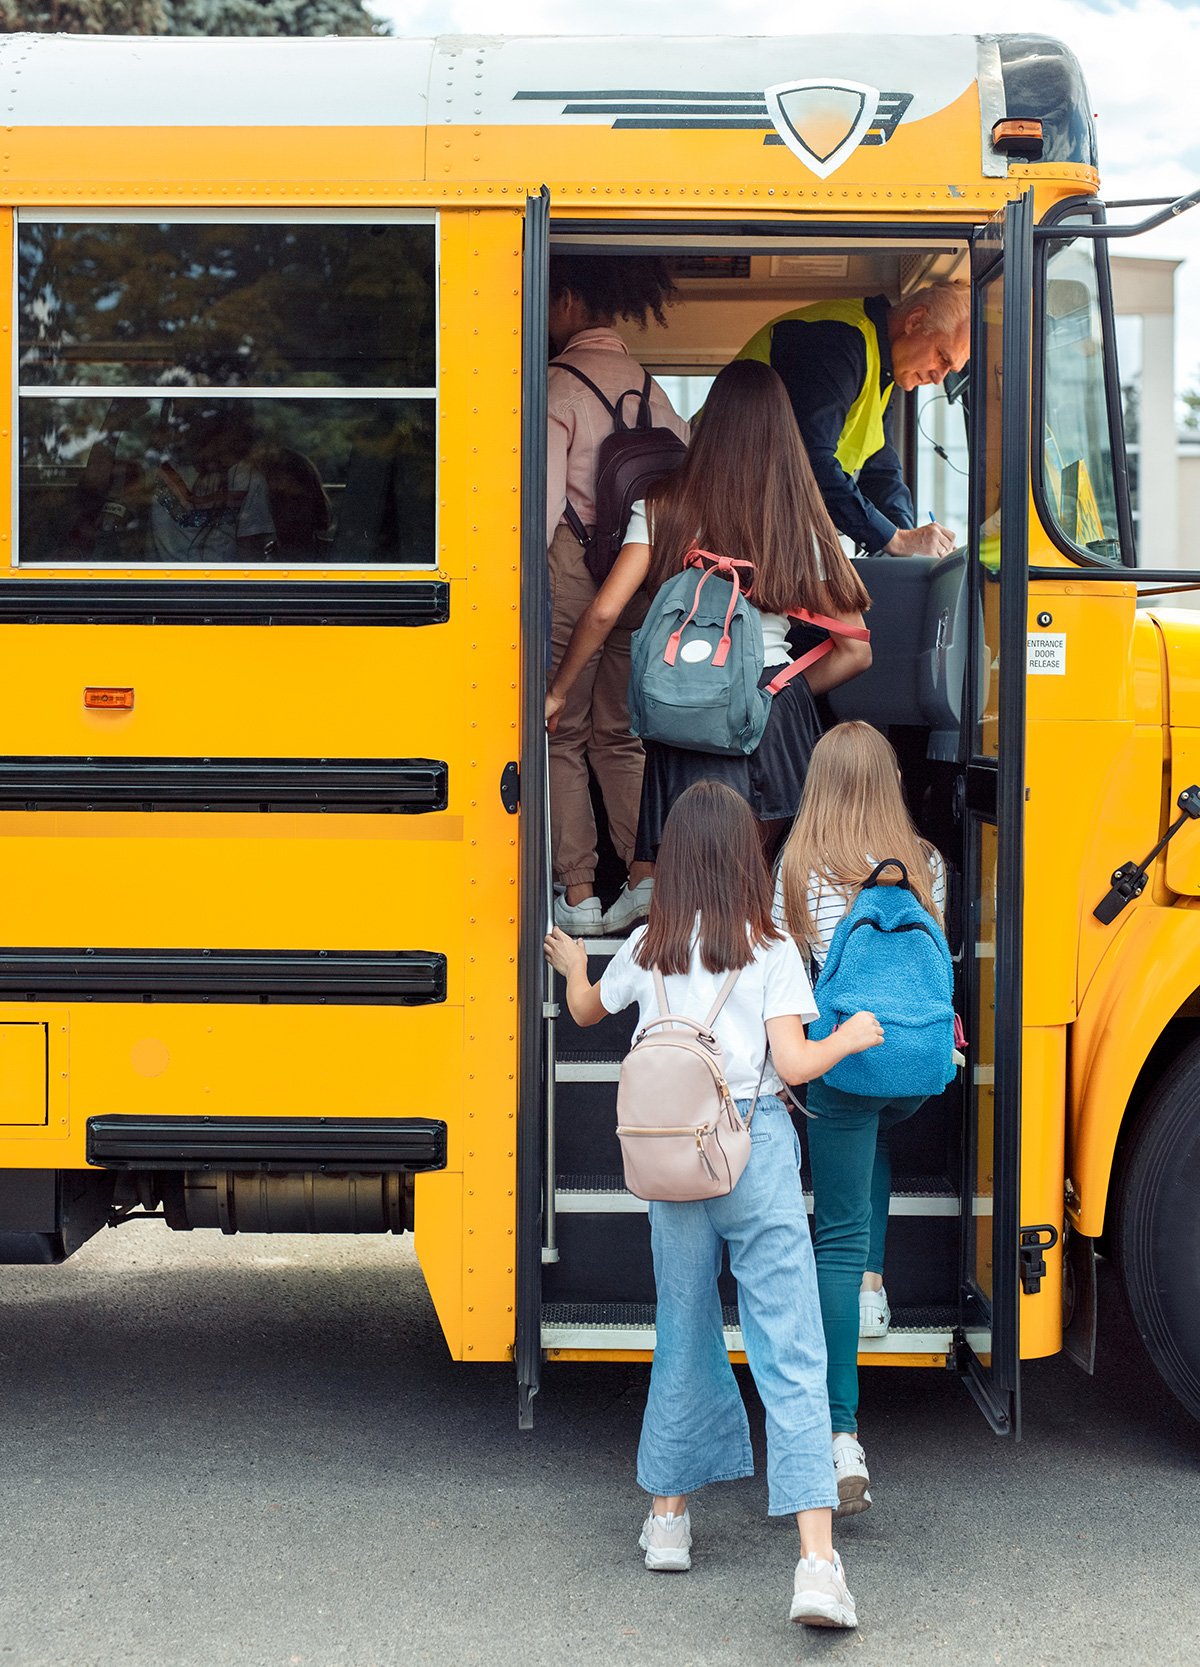 Поездка всем классом: как грамотно и безопасно организовать перевозку группы детей автобусами